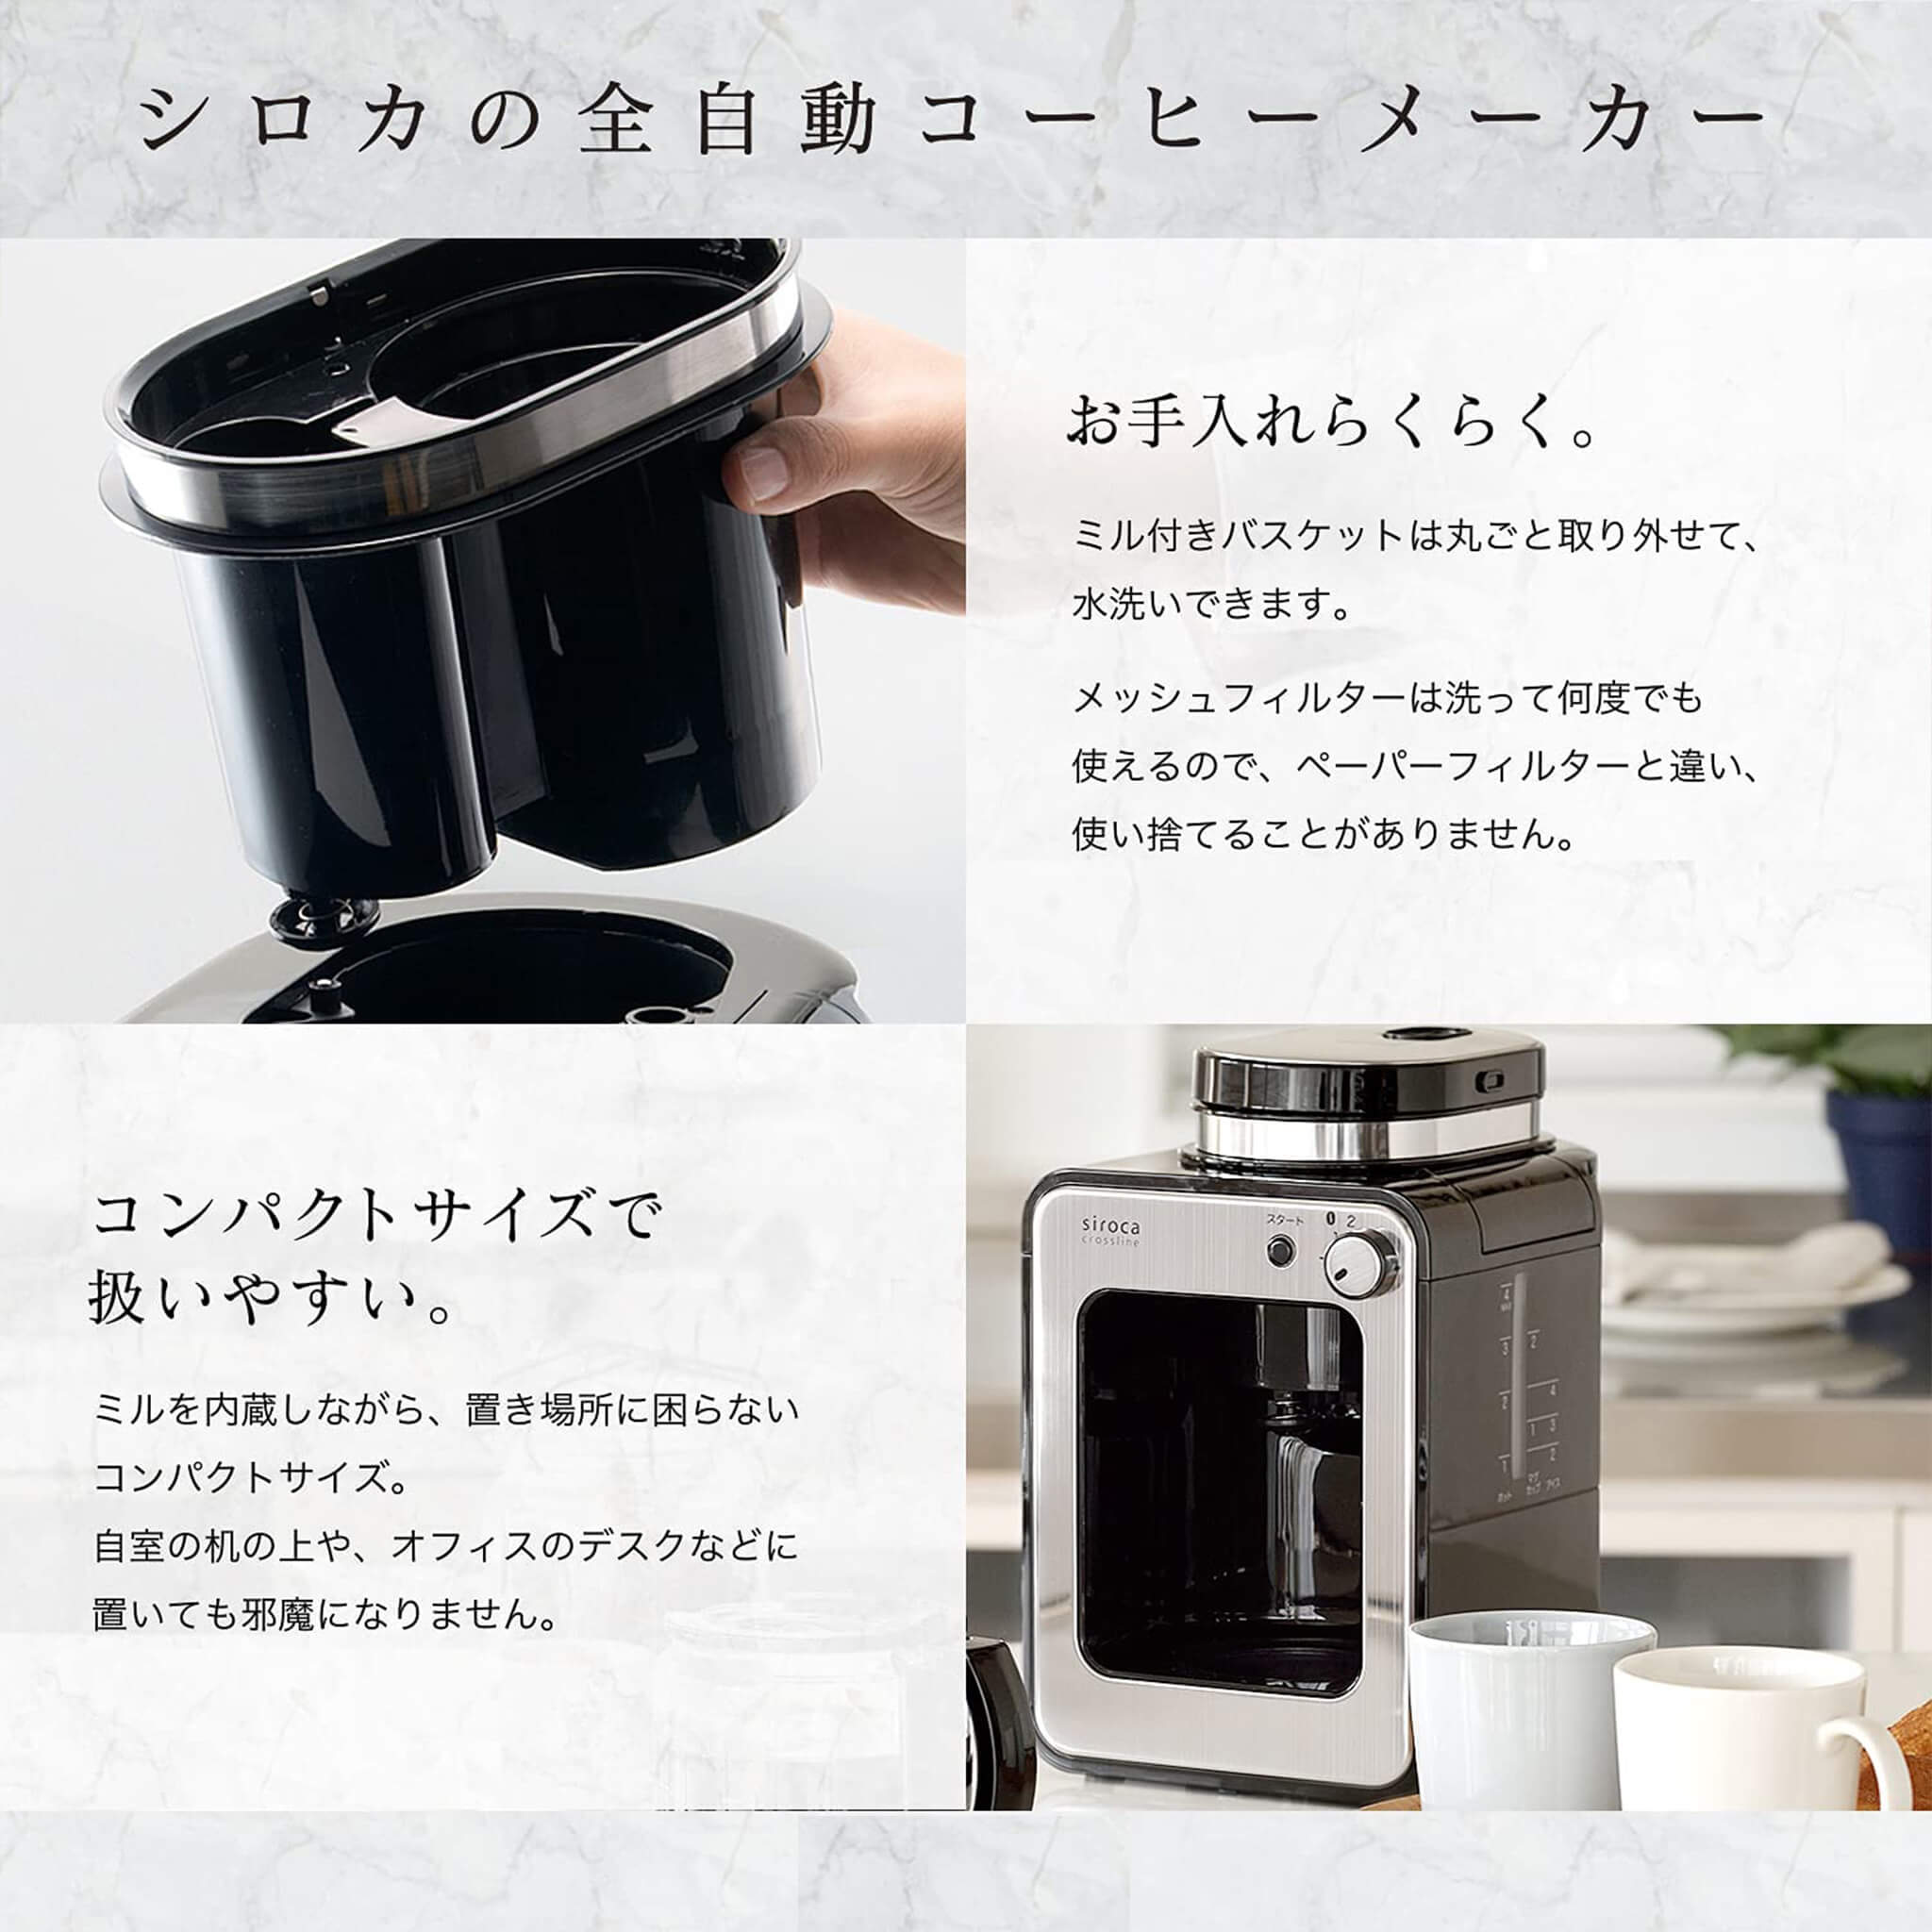 コーヒーメーカーsiroca 全自動コーヒーメーカー SC-A211